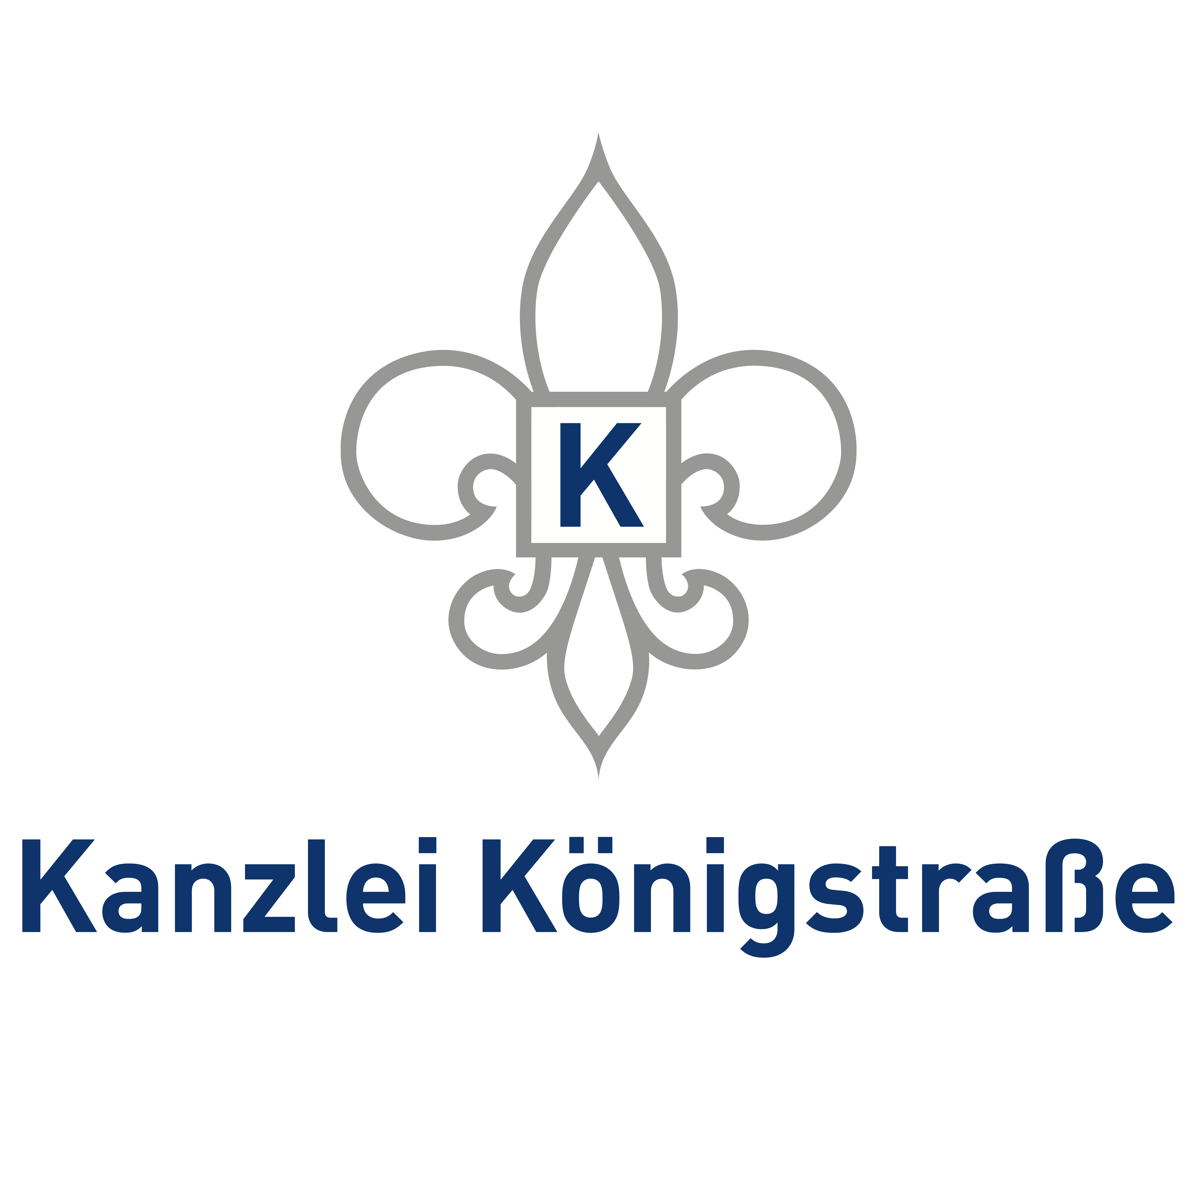 Kanzlei-logo-1